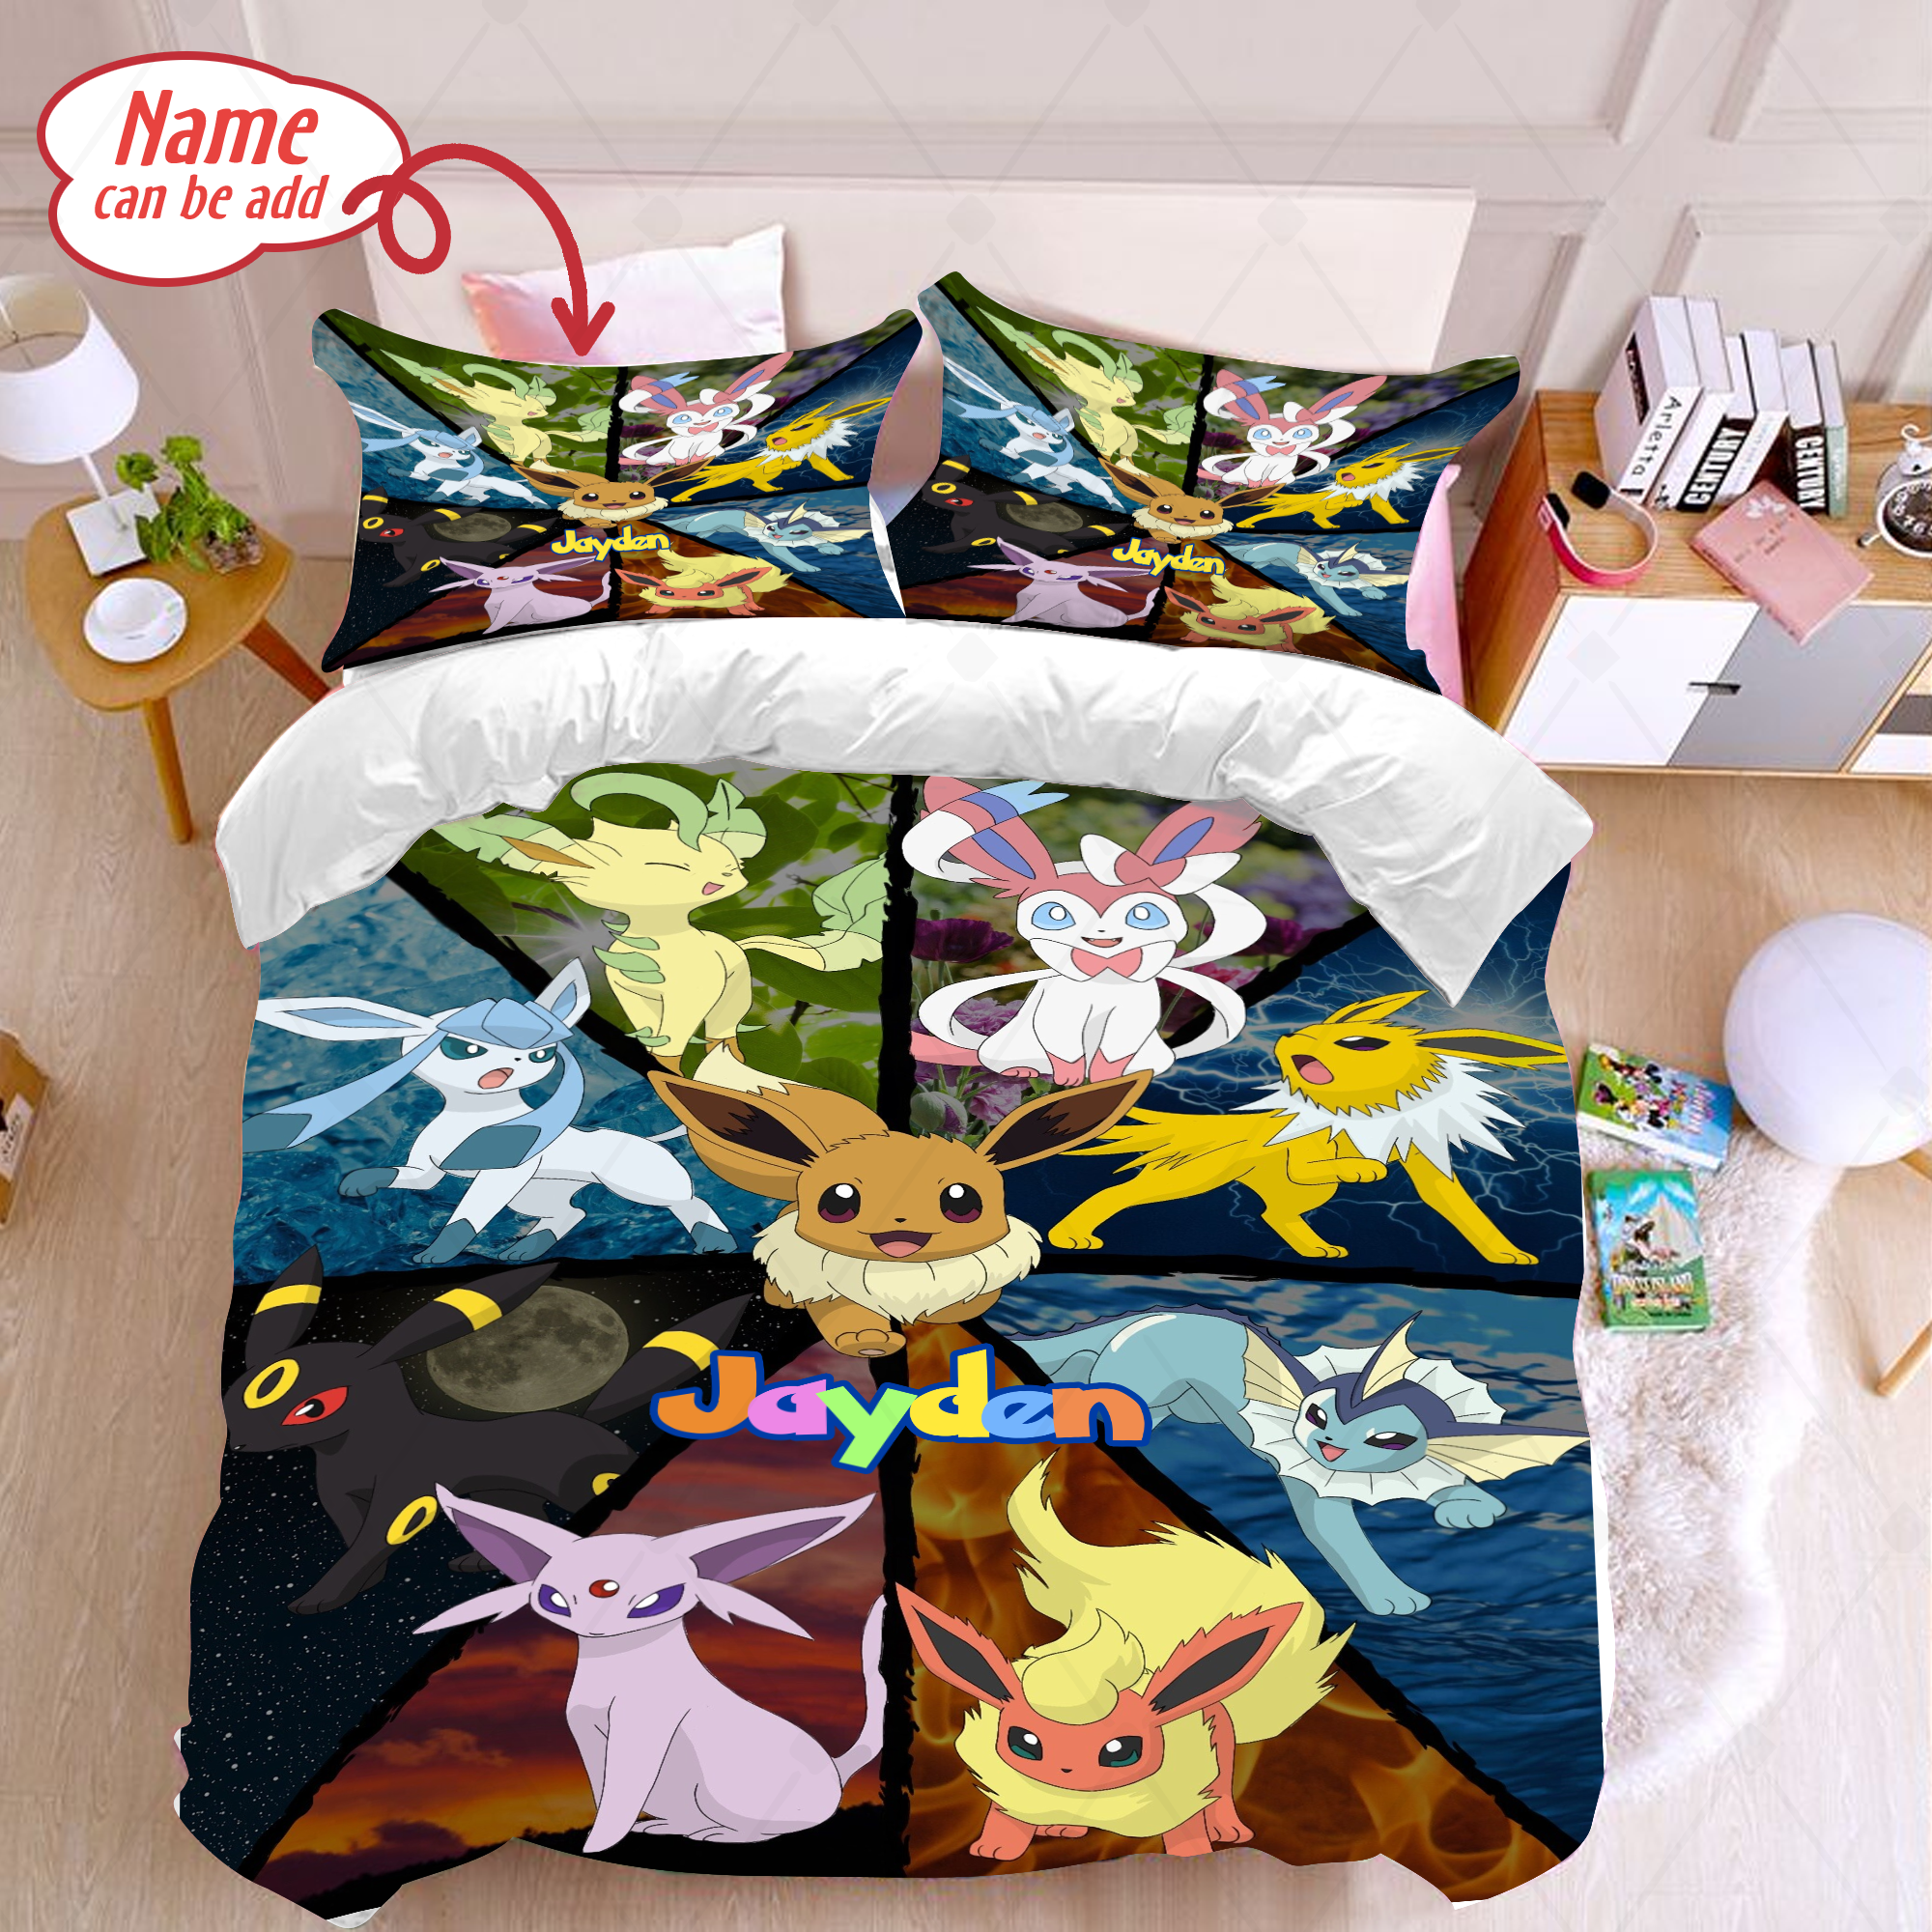 Personalized Eevee Pokemon Evolution Bedding Set Eevee Pokemon Duvet Cover And Pillowcase Eevee Pokemon Quilt